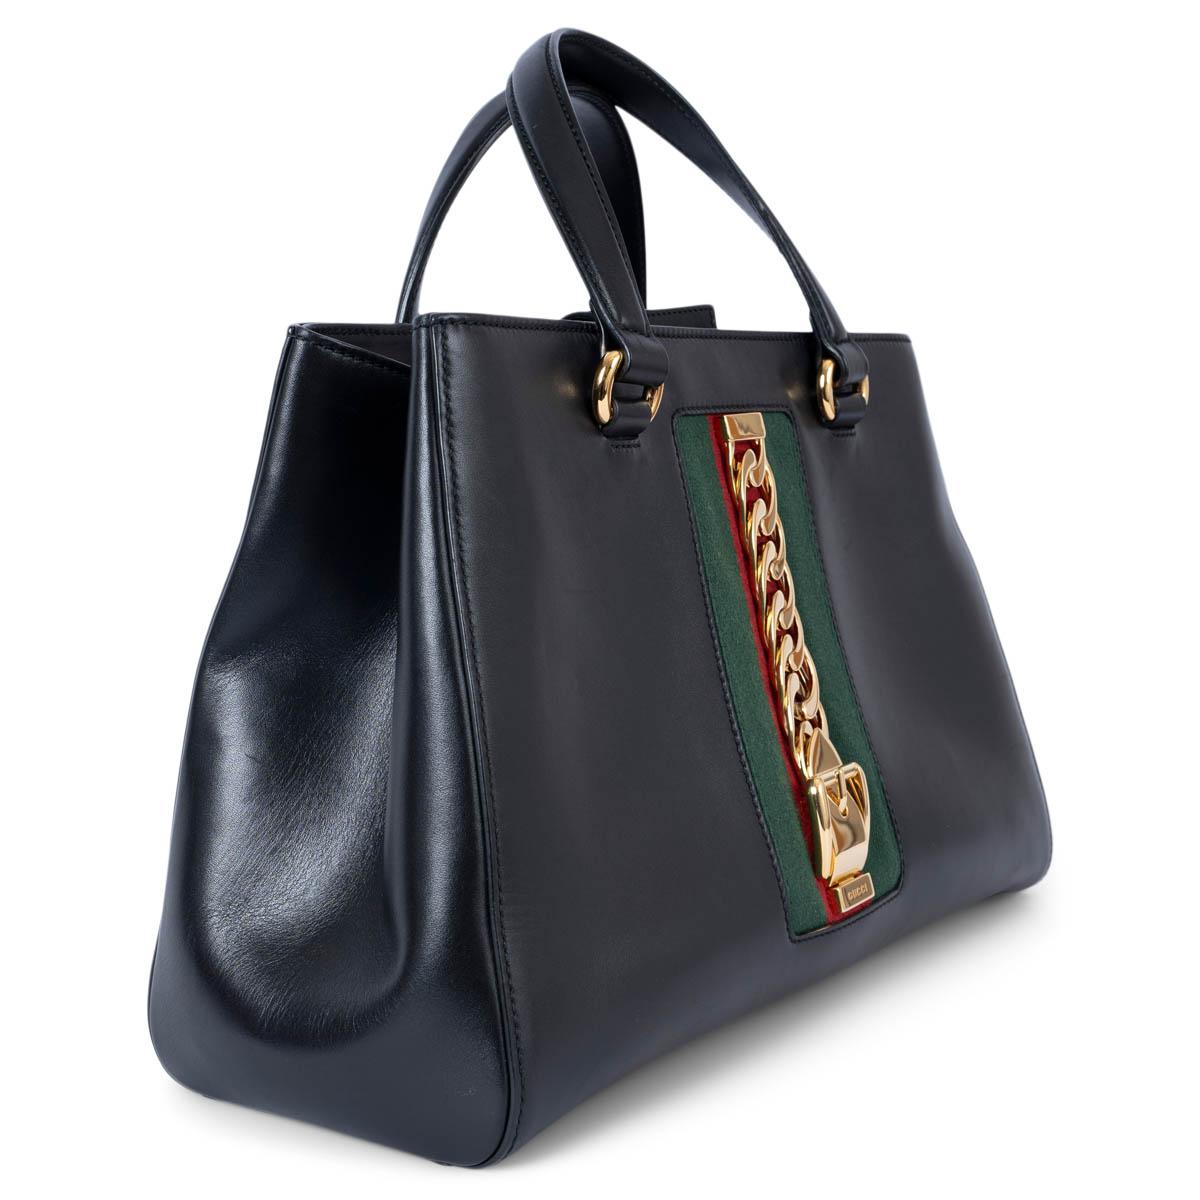 100% authentische Gucci Large Sylvie Tote Bag aus schwarzem Glattleder mit grünem und rotem klassischem Web auf der Vorderseite, verziert mit goldfarbener Metallschnalle und Kettendetail. Sie lässt sich mit einem Magnetknopf öffnen und ist mit